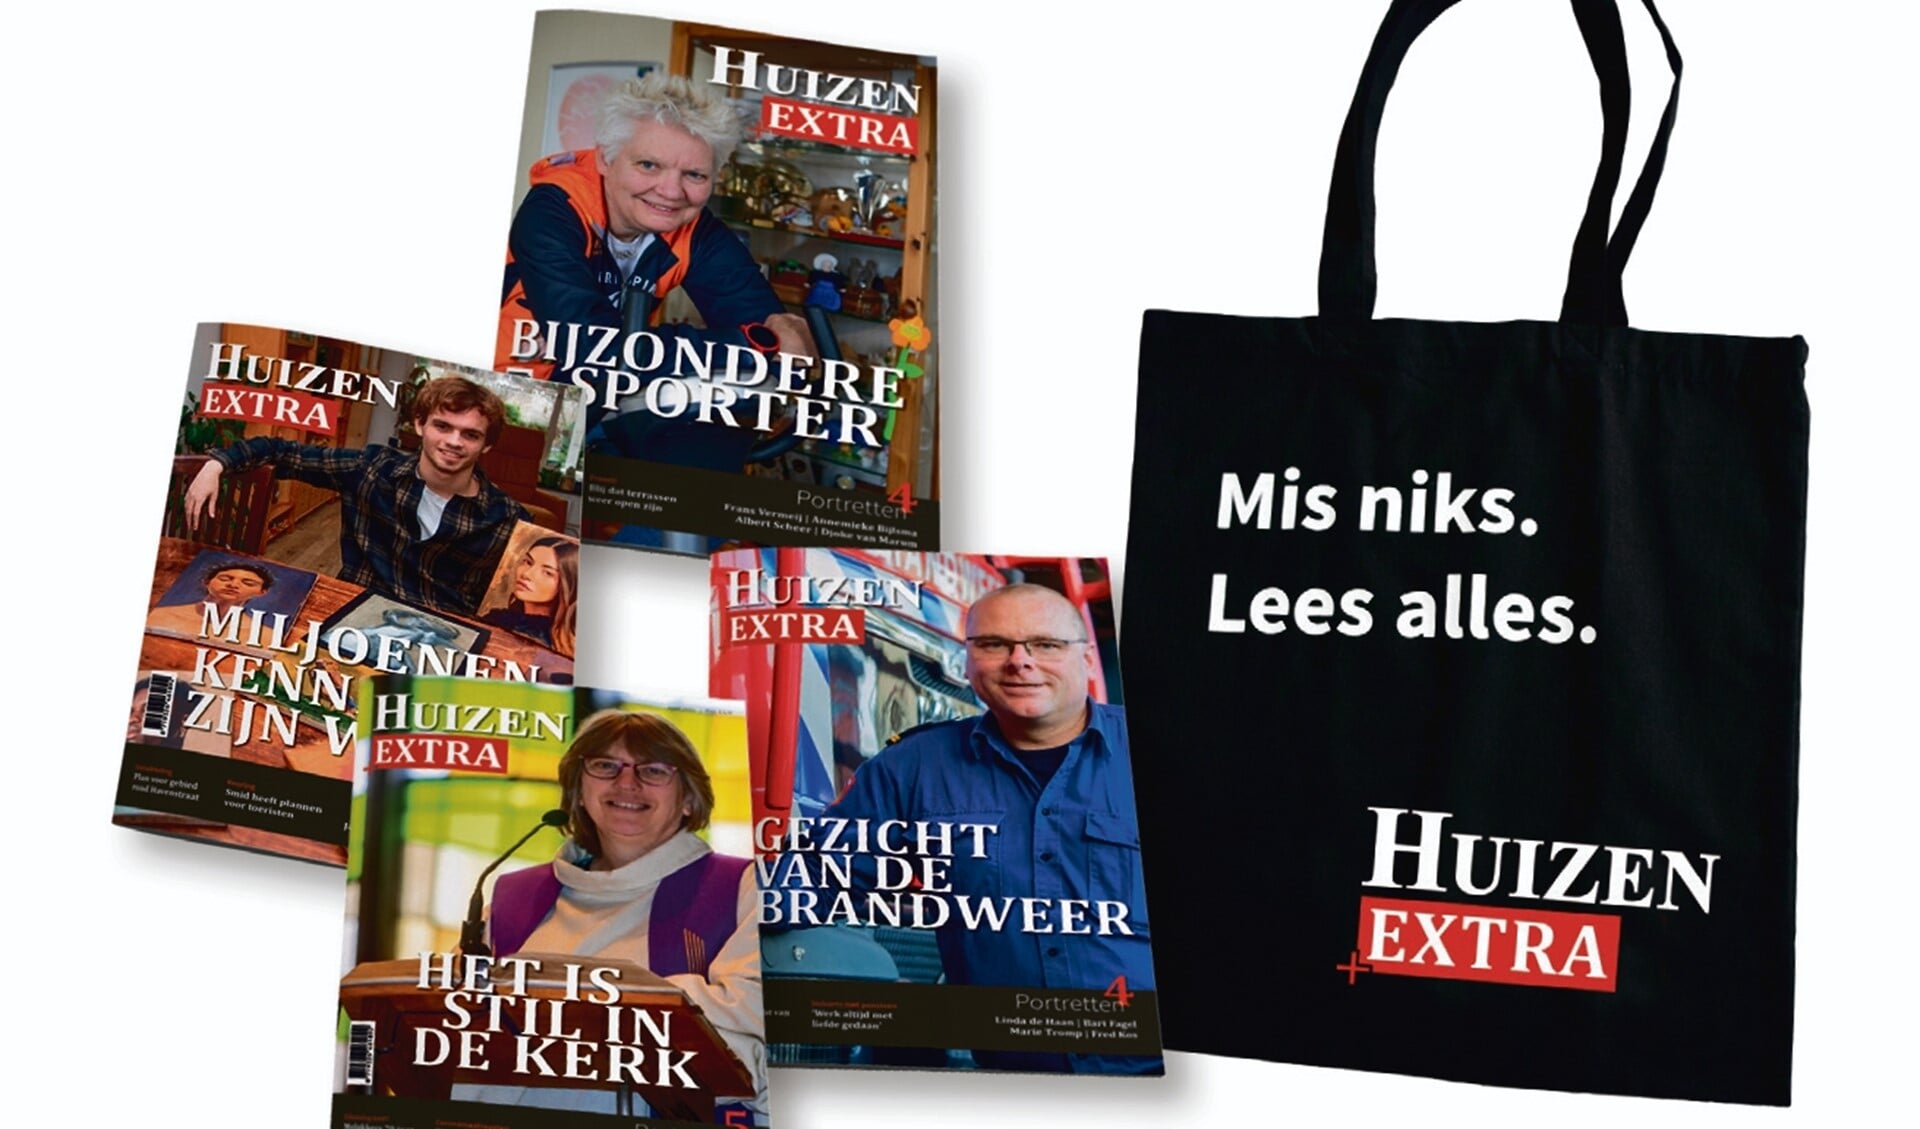 Een aantal voorbeelden van magazines van Huizen Extra. In de tas zitten de vier laatste magazines die zijn uitgebracht.